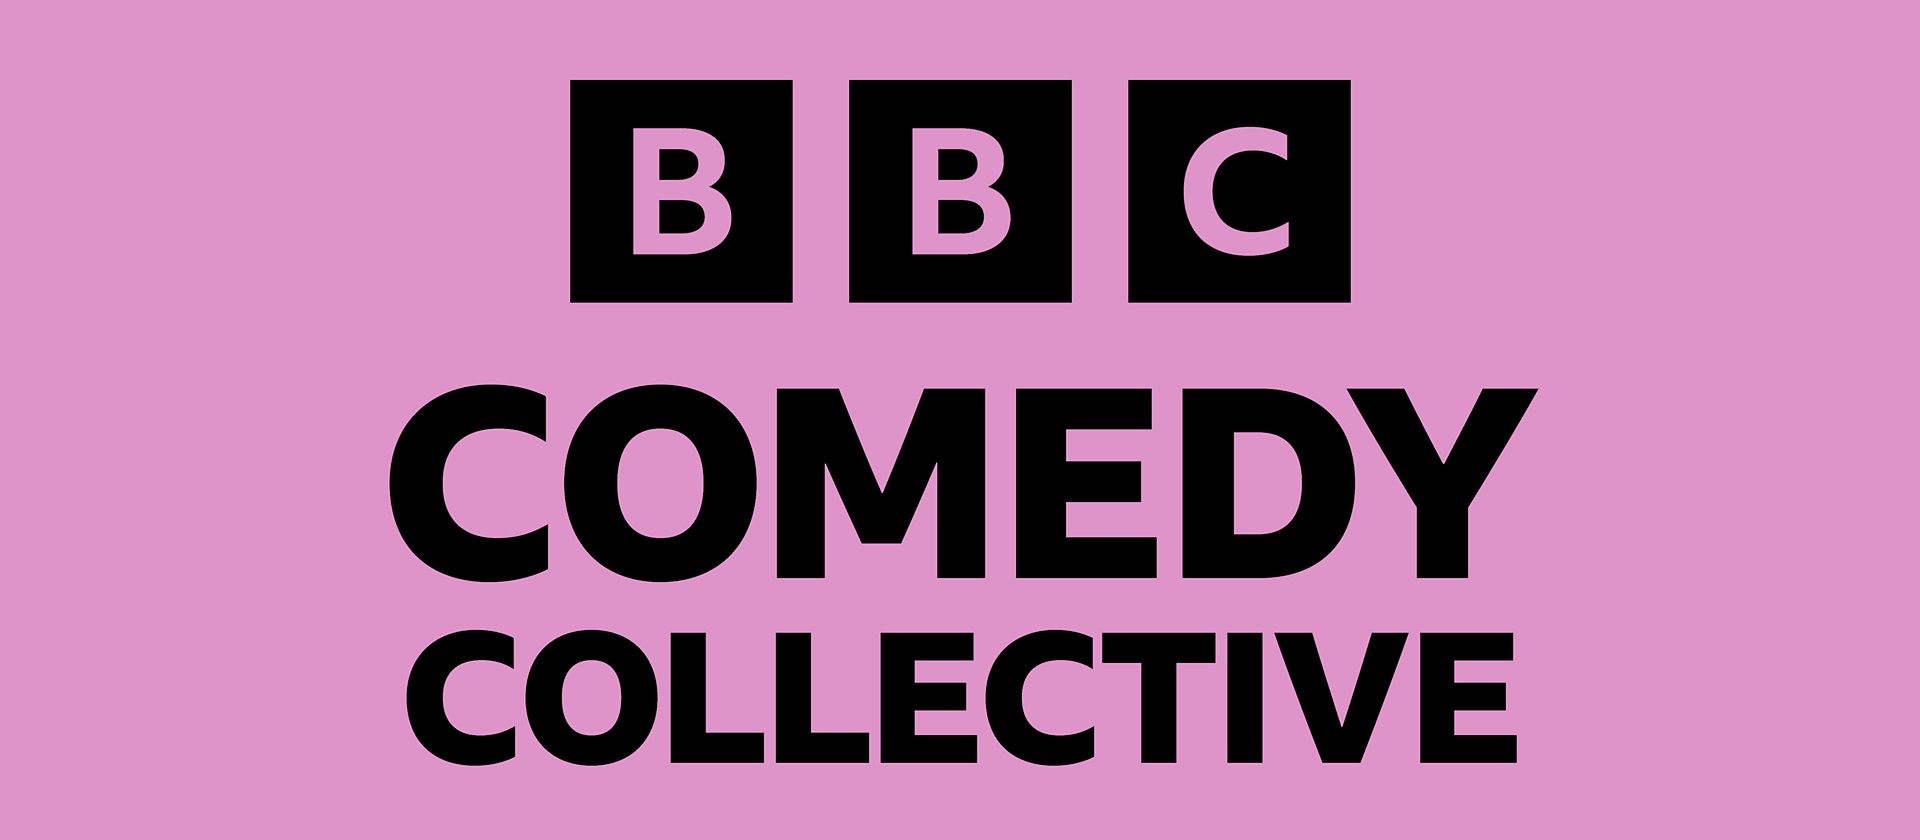 Benjamin Bee named as a recipient of the BBC Comedy Collective bursary scheme